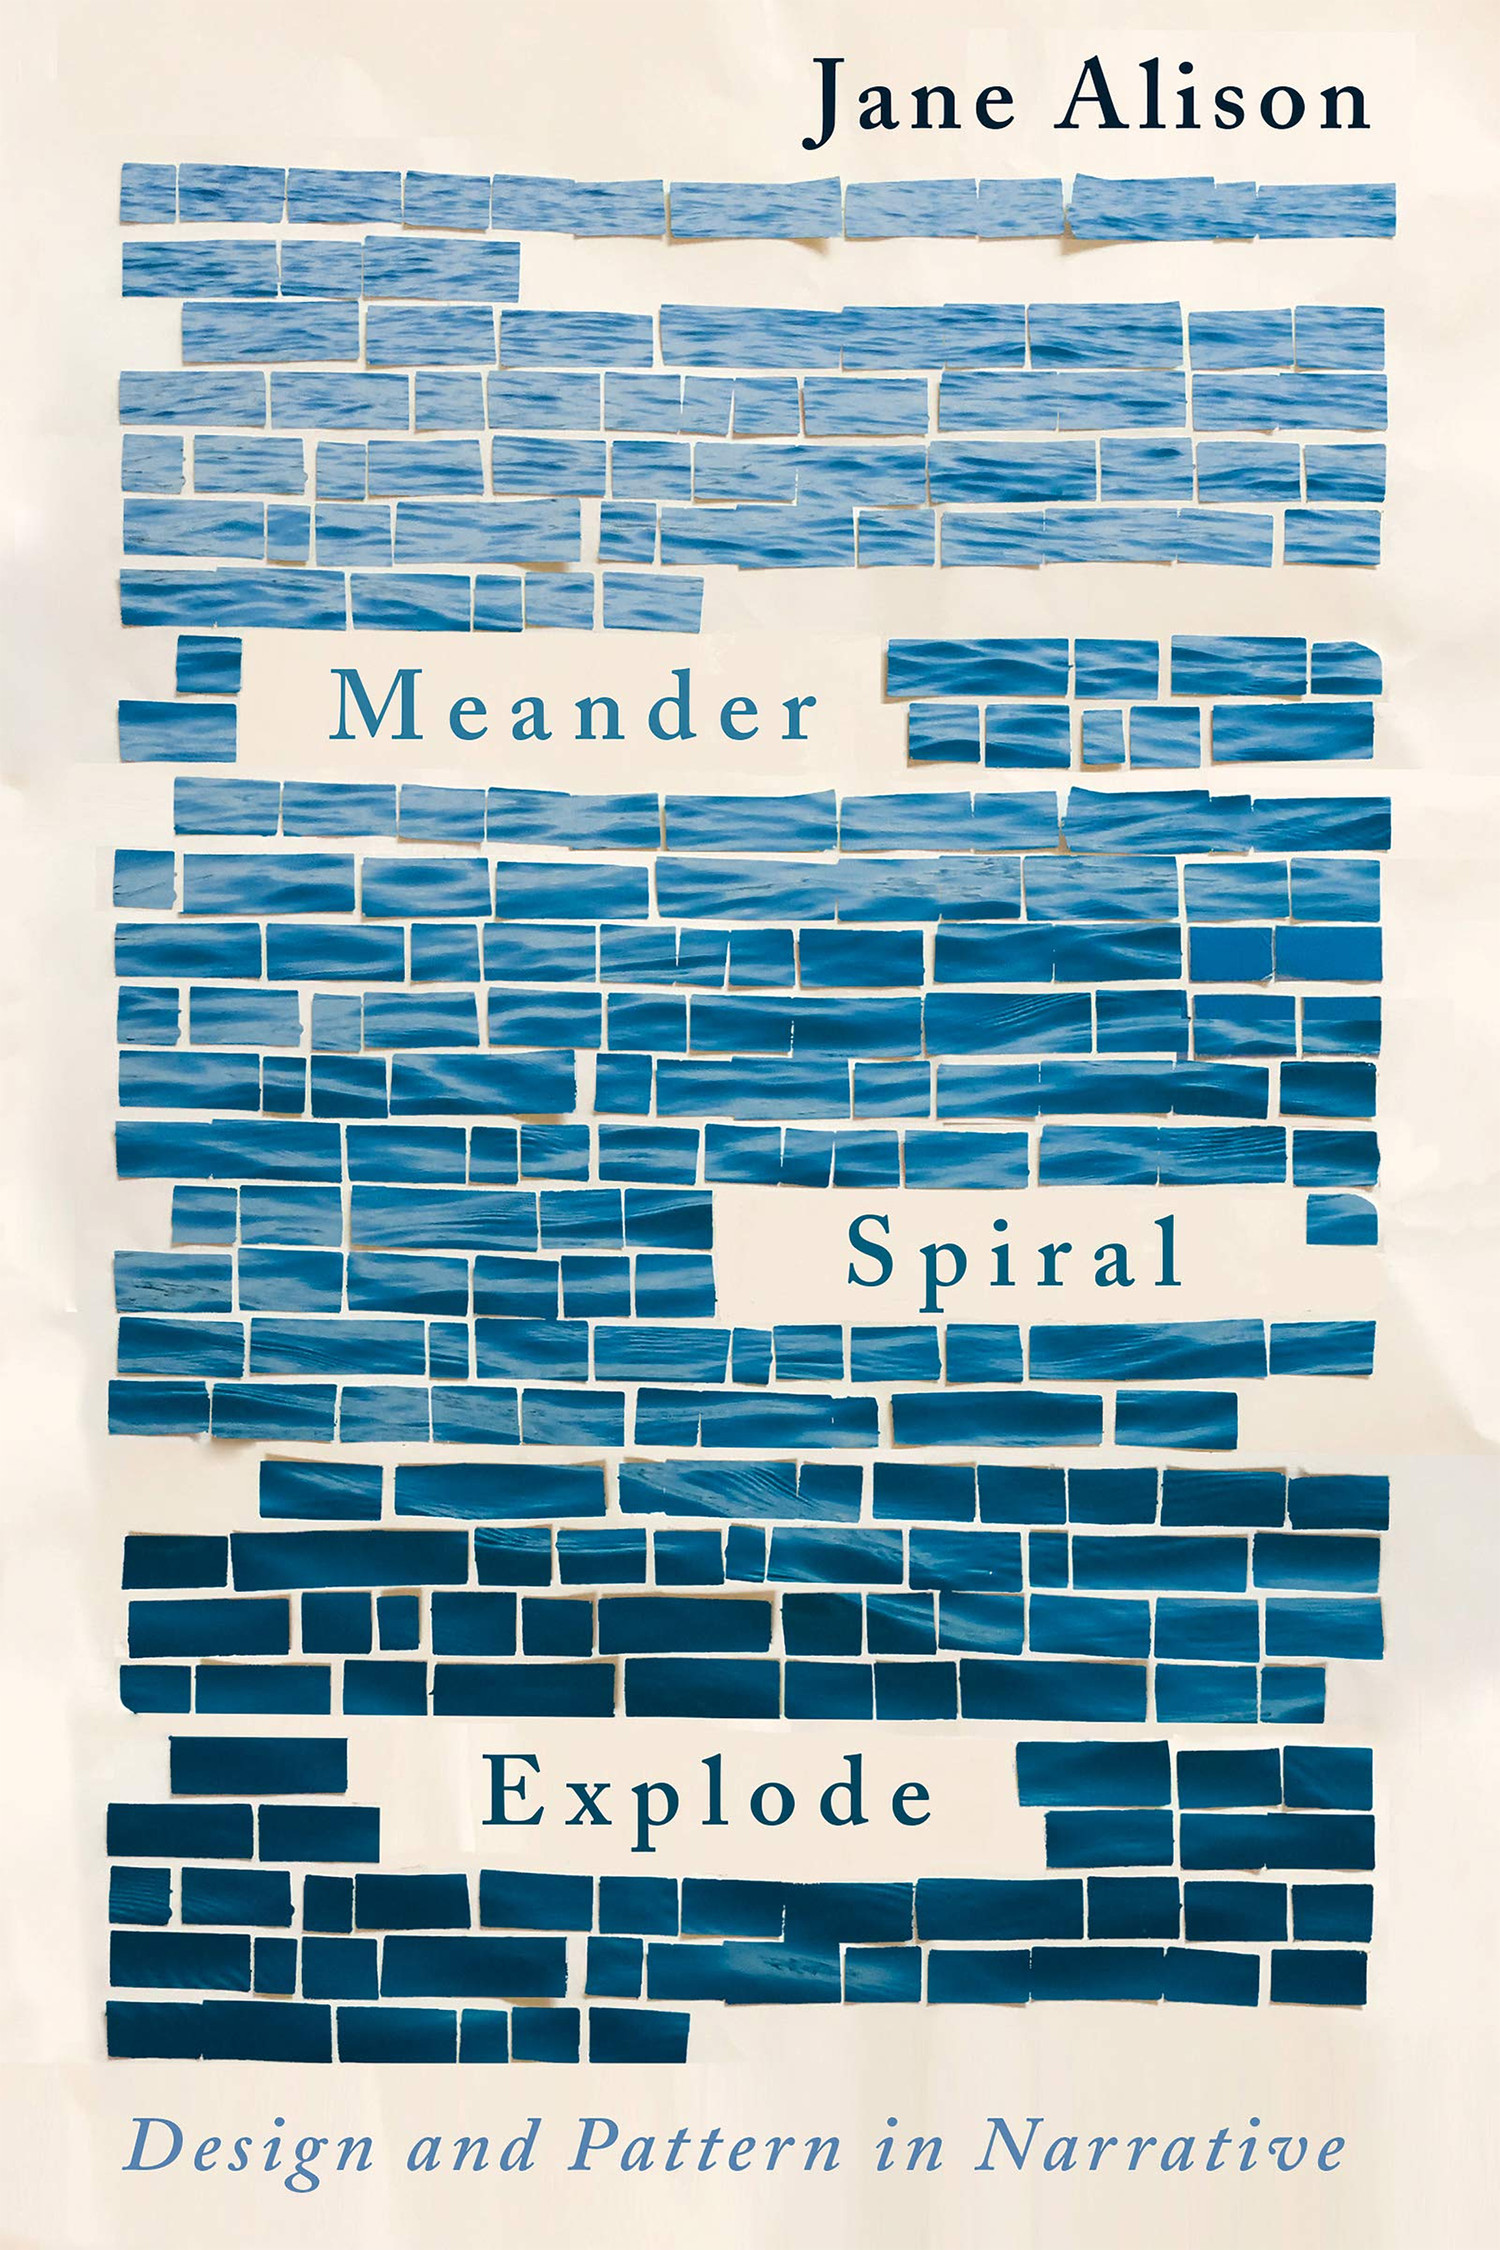 Jane Alison: Meander, Spiral, Explode (2019, Catapult)